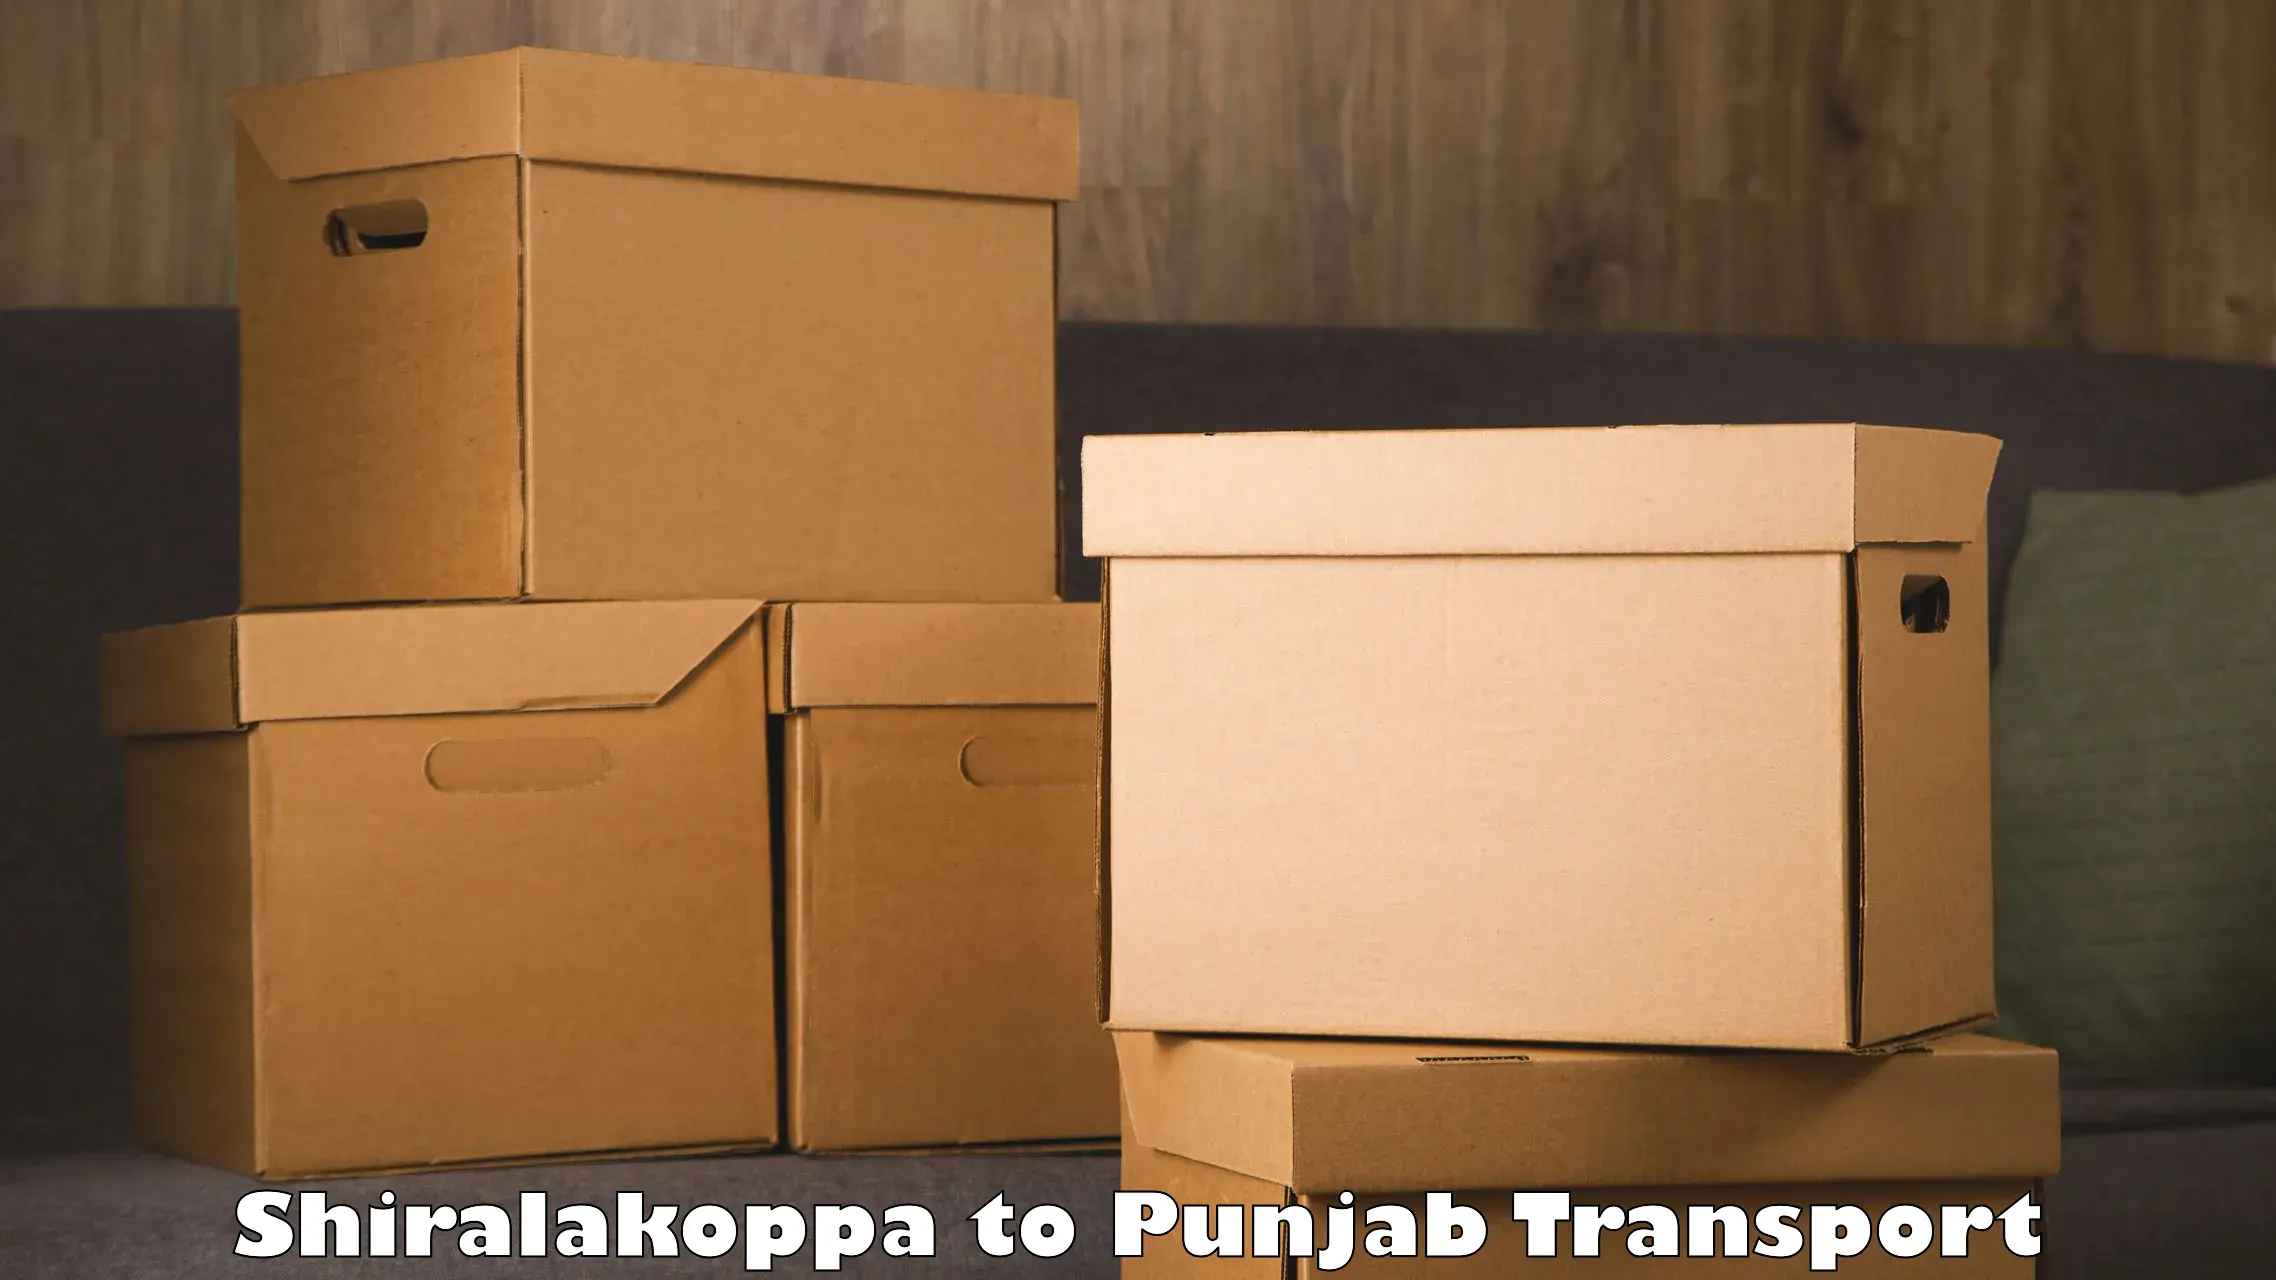 Truck transport companies in India Shiralakoppa to Rajpura